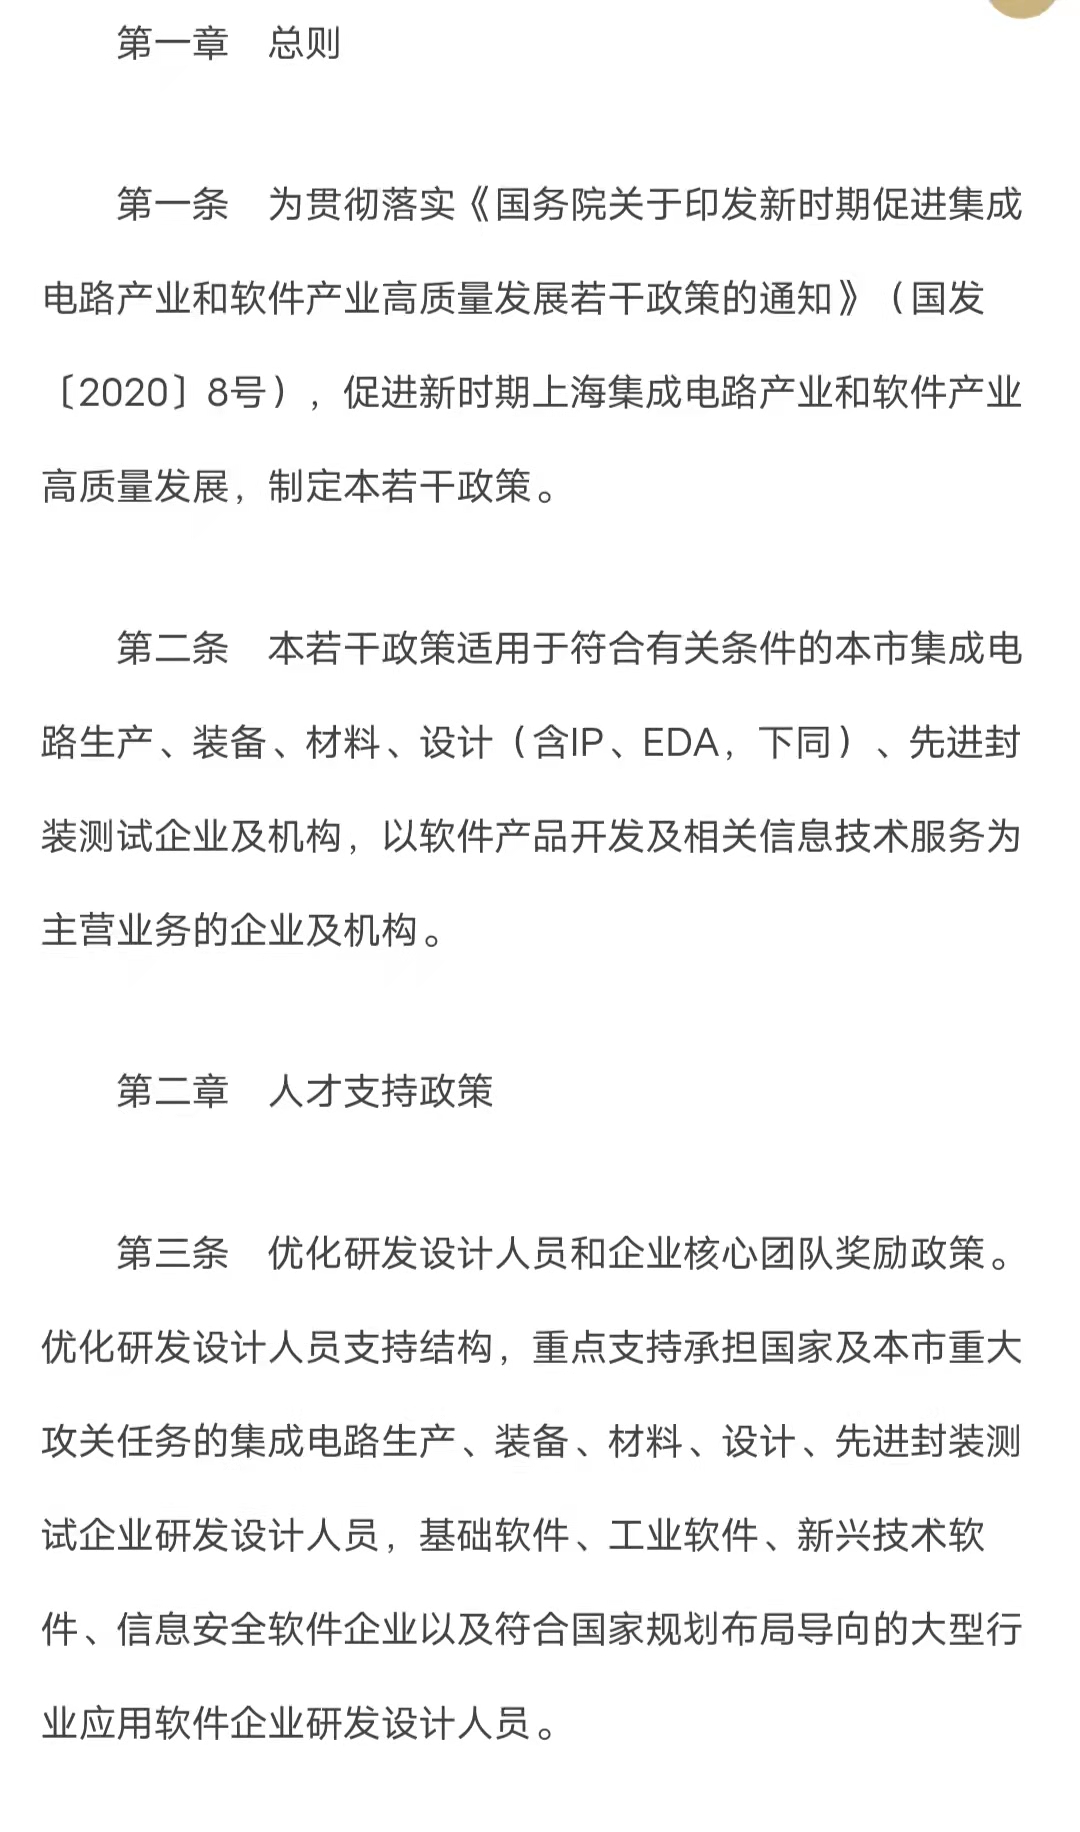 上海印发集成电路与软件新政 覆盖EDA、28纳米工艺等领域